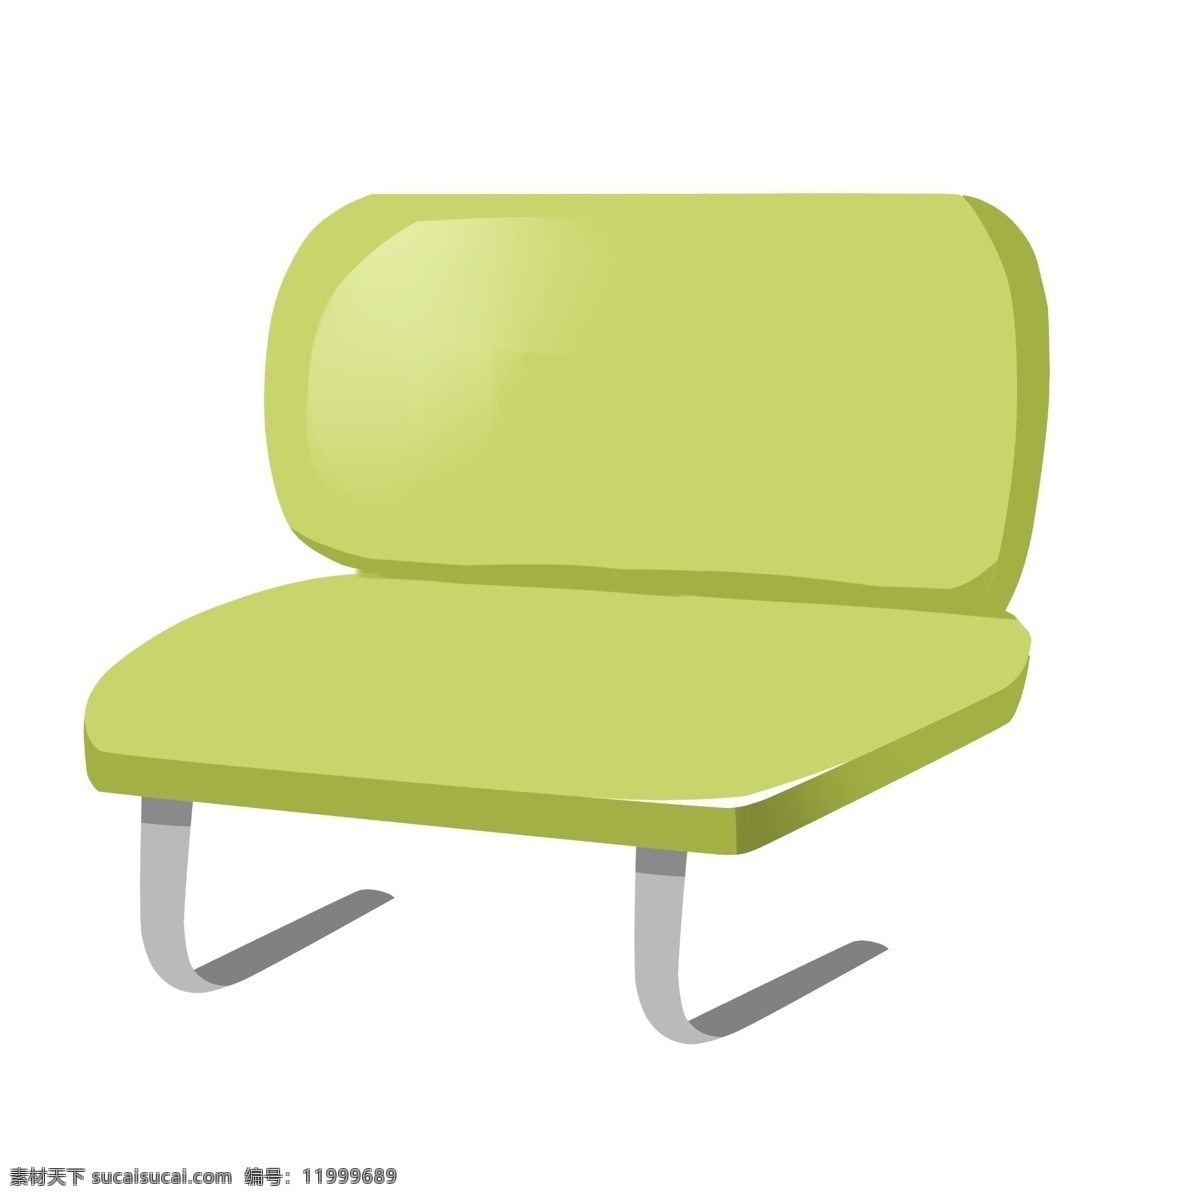 绿色 公用 椅子 插画 公用的椅子 卡通插画 椅子插画 家具插画 家具椅子 木质椅子 绿色的椅子